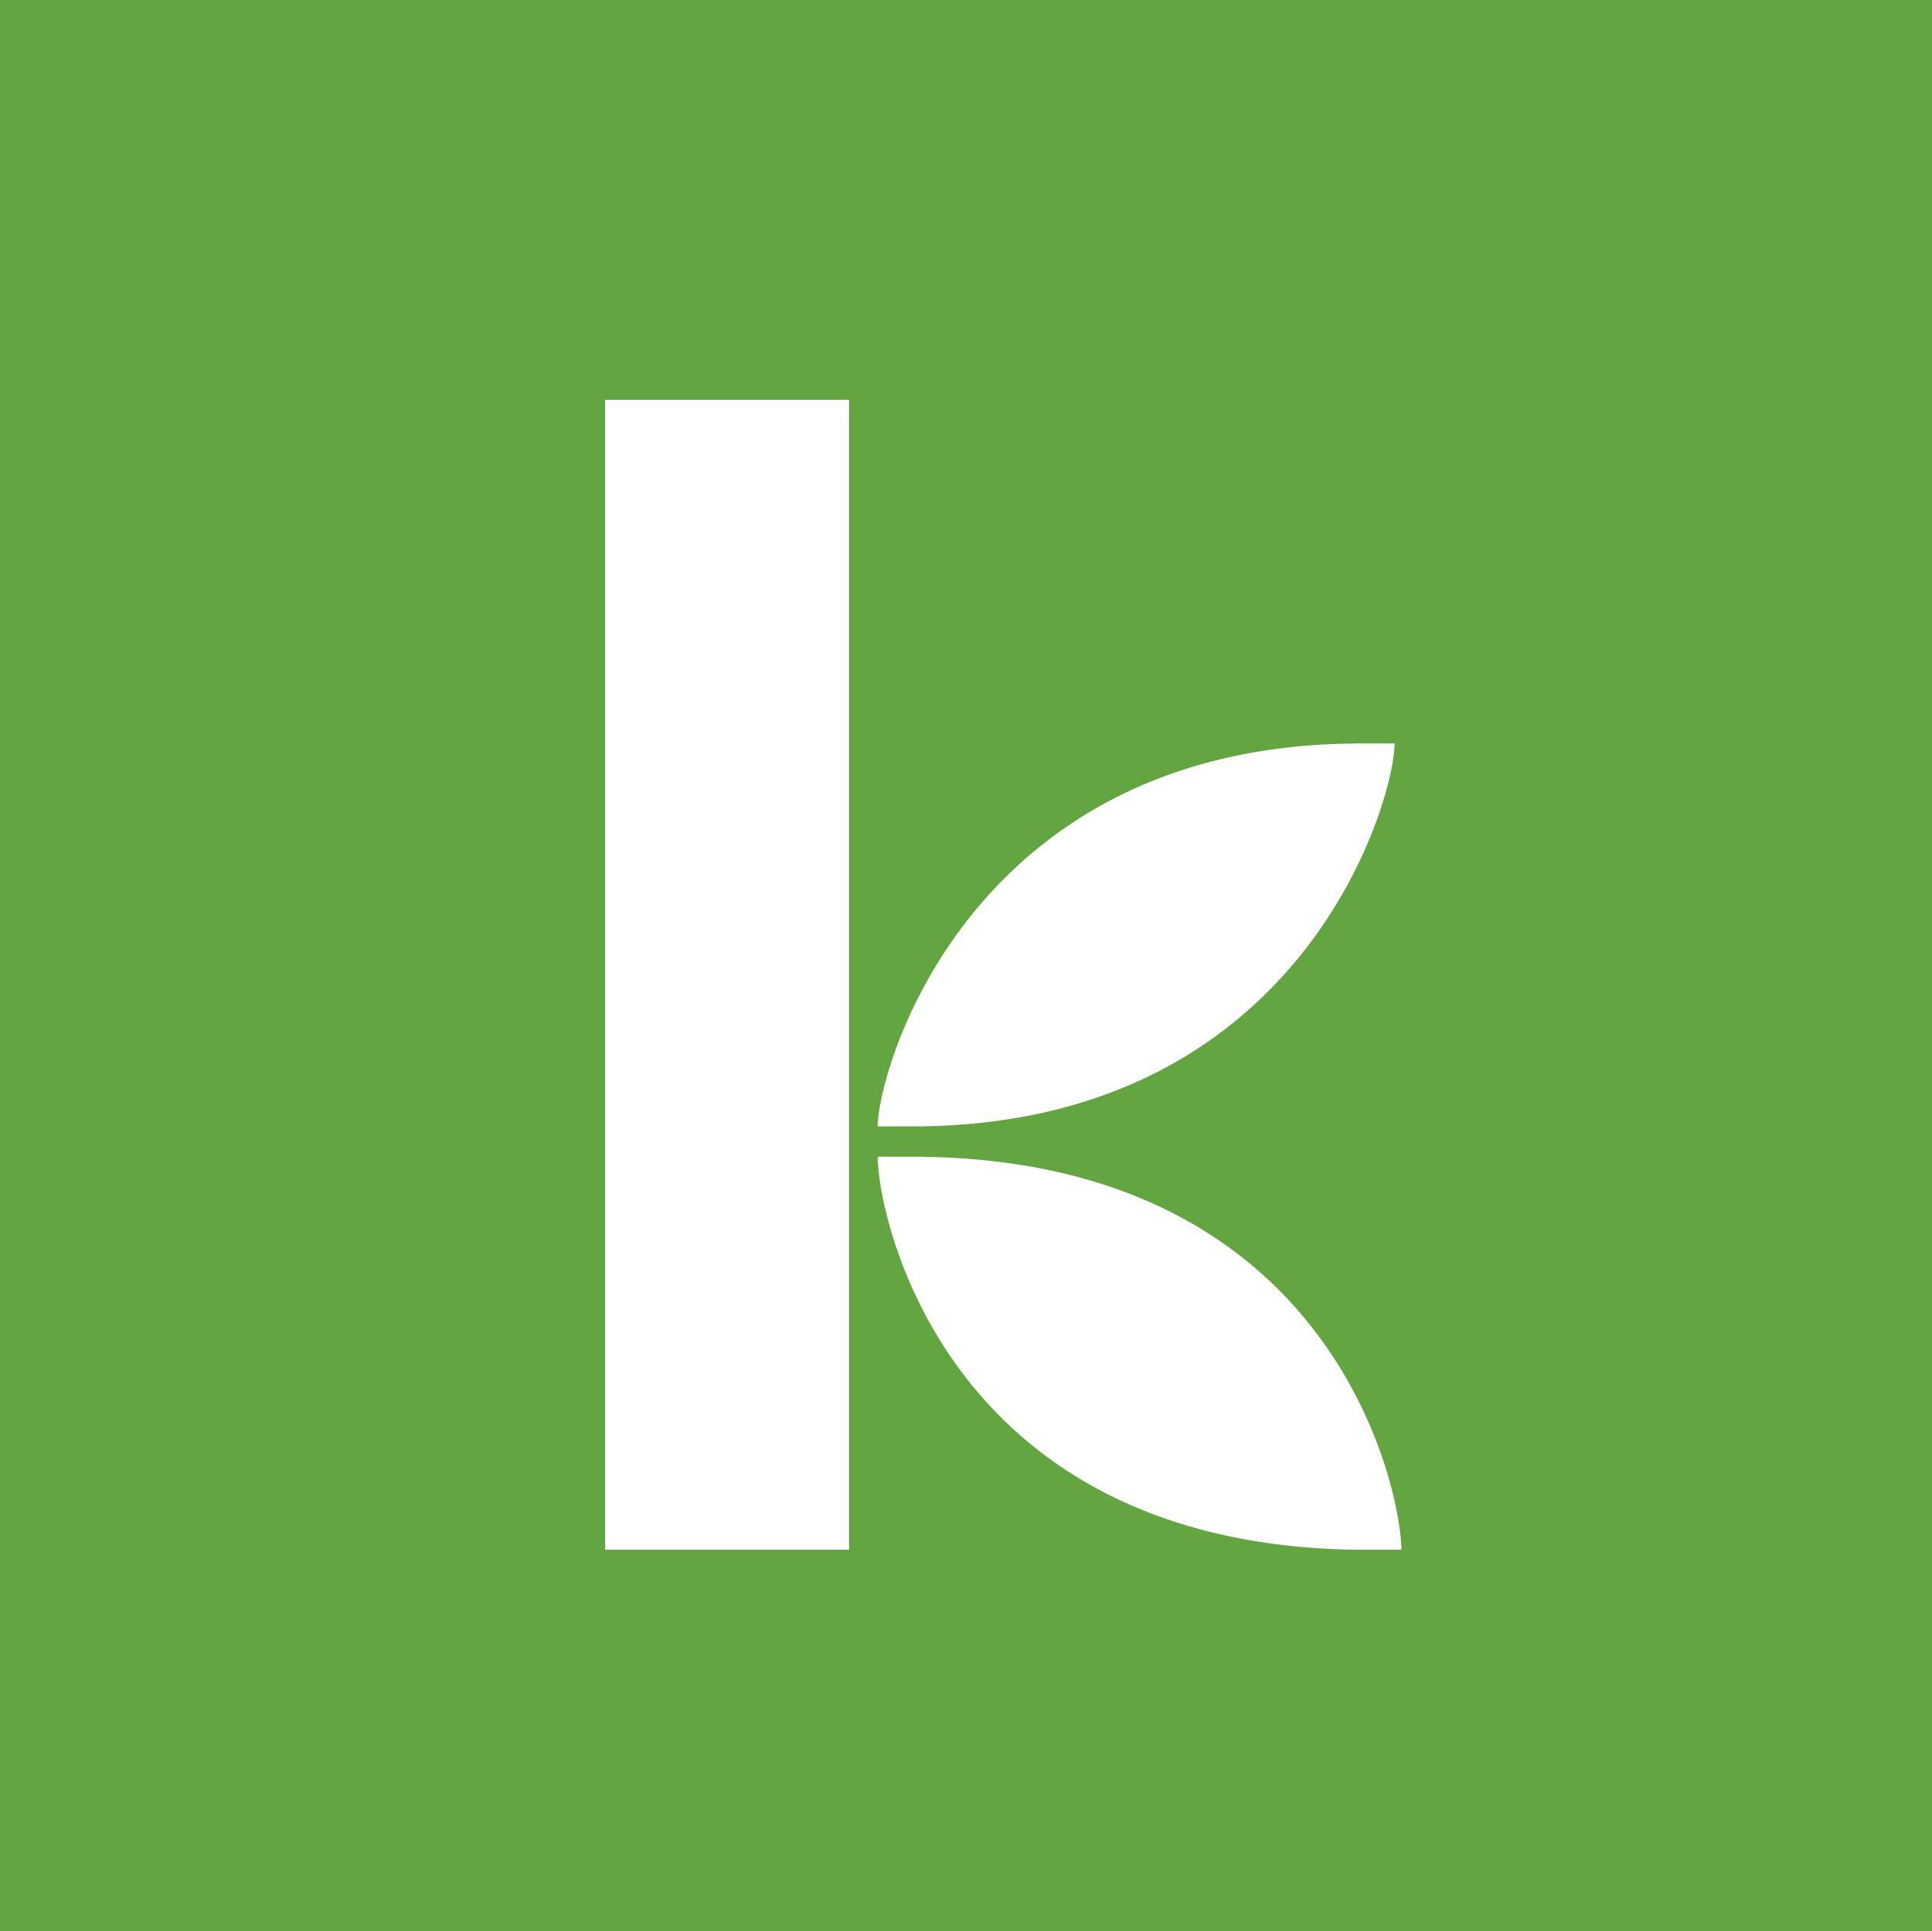 Green K Logo - Where Kiva works